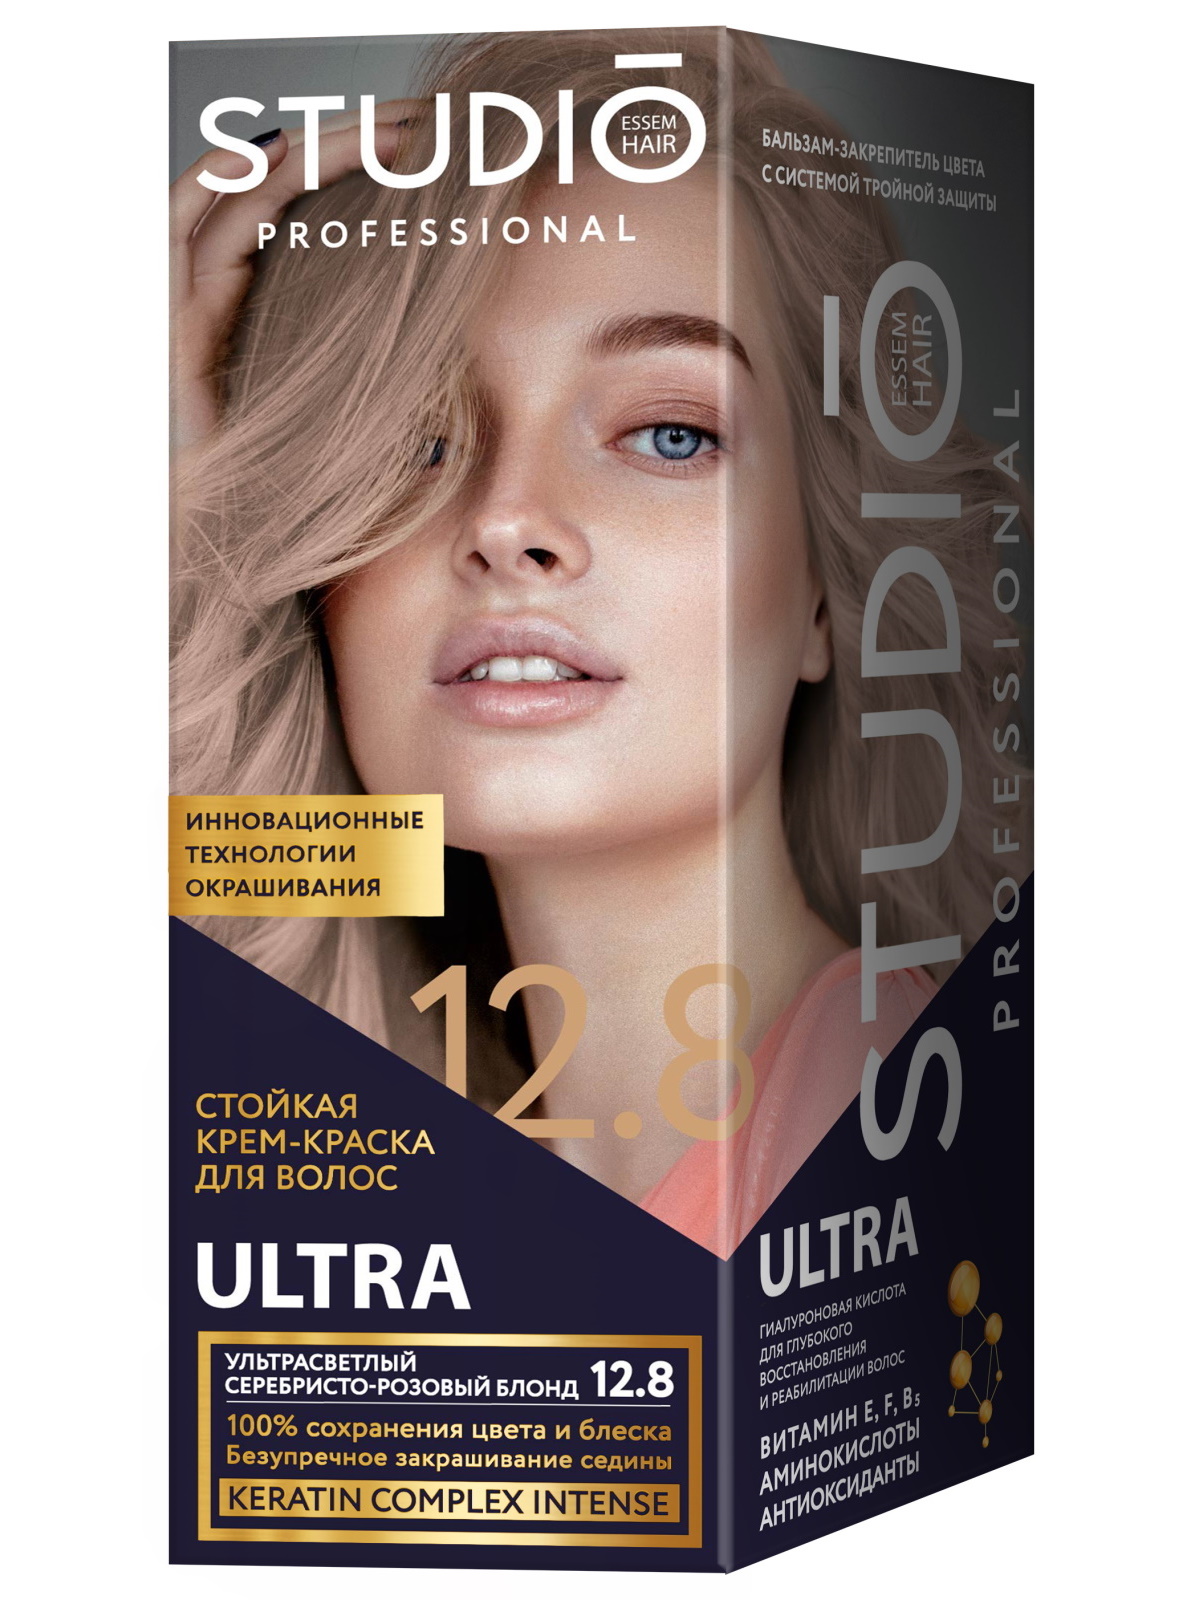 Комплект ULTRA STUDIO PROFESSIONAL 12.8 ультрасветлый серебристо-розовый блонд 2*50+15 мл